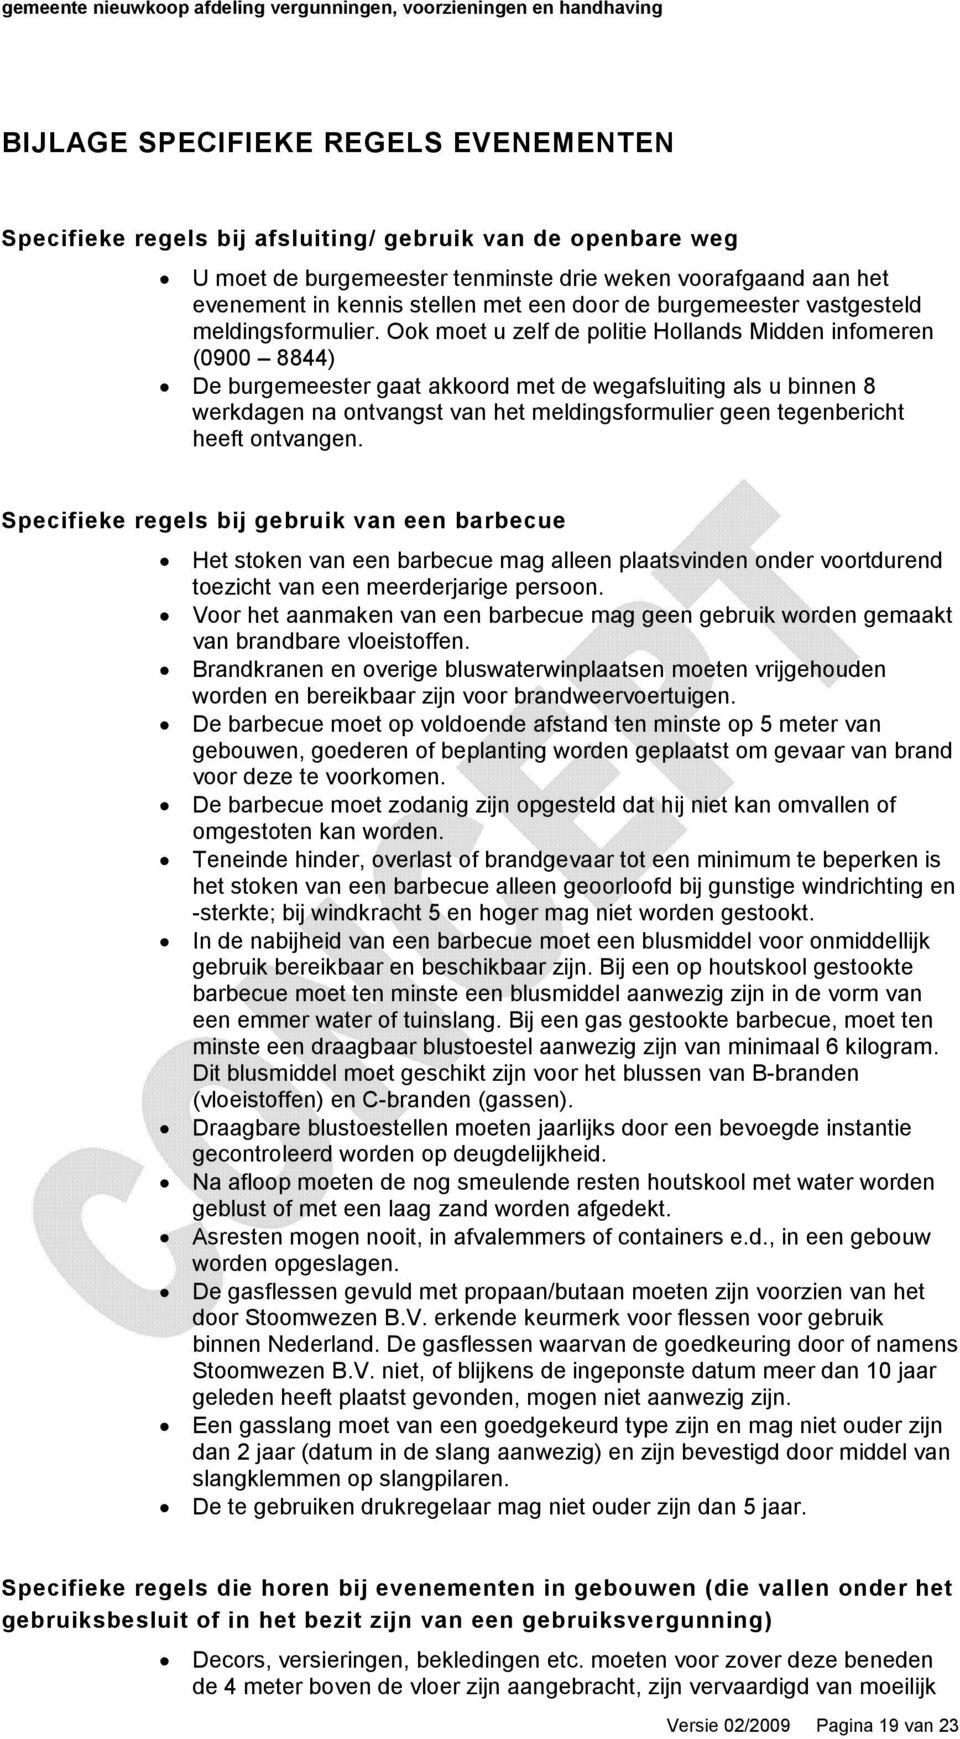 Ook moet u zelf de politie Hollands Midden infomeren (0900 8844) De burgemeester gaat akkoord met de wegafsluiting als u binnen 8 werkdagen na ontvangst van het meldingsformulier geen tegenbericht